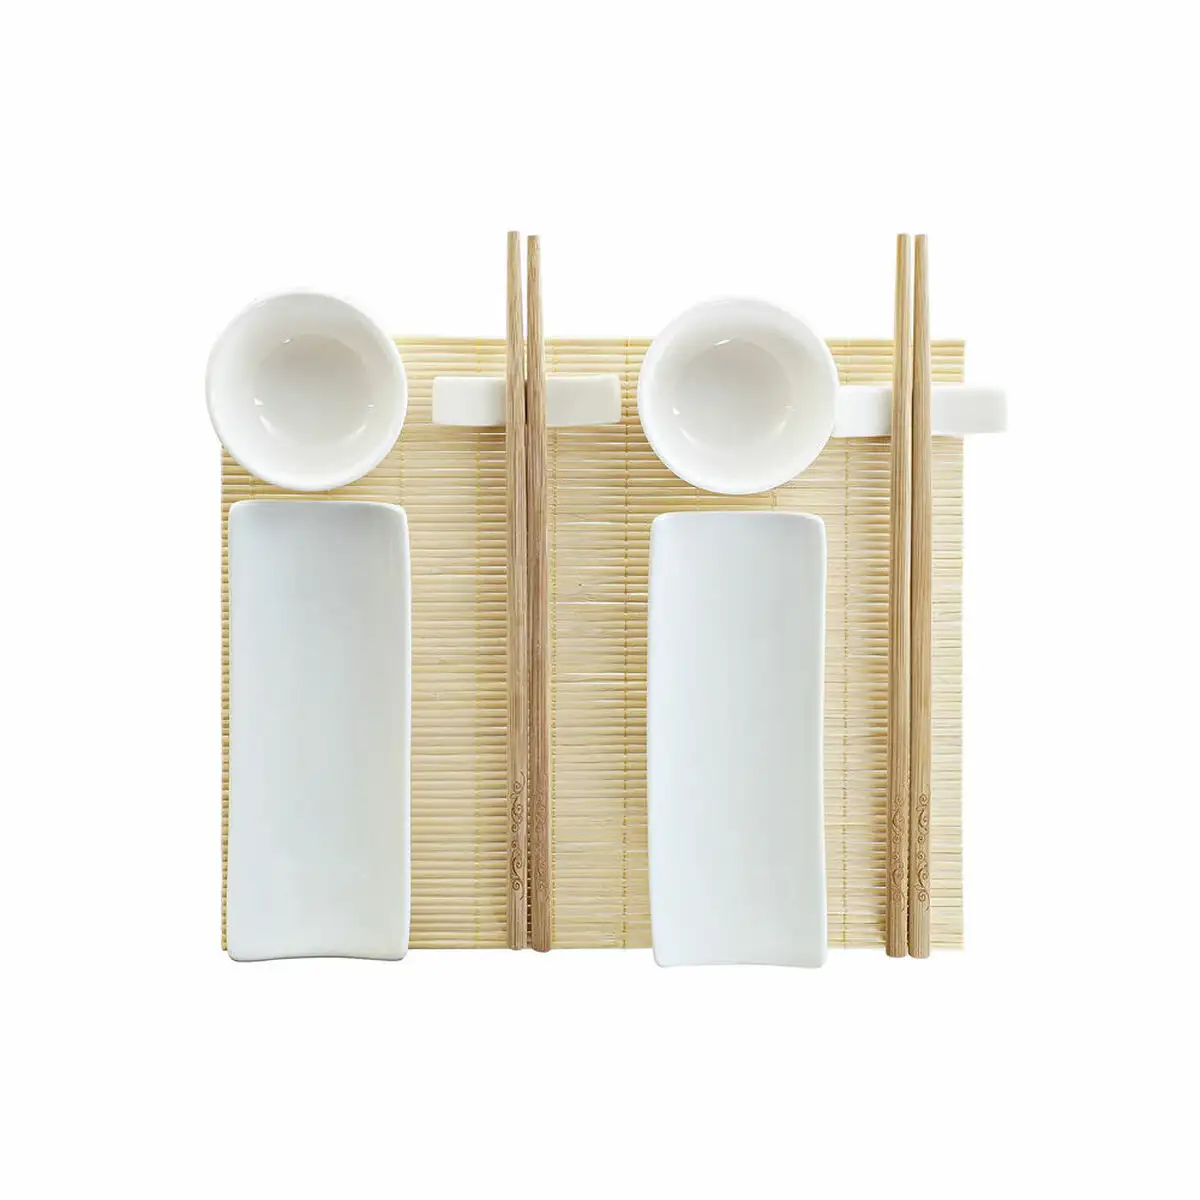 Set de sushi dkd home decor bambou gres blanc naturel oriental 28 5 x 19 5 x 3 3 cm 9 pieces 28 5 x 19 5 x 3 3 cm _5997. DIAYTAR SENEGAL - Votre Passage vers l'Élégance Abordable. Explorez notre collection où chaque produit est choisi pour sa qualité et son accessibilité, incarnant ainsi l'essence du Sénégal.